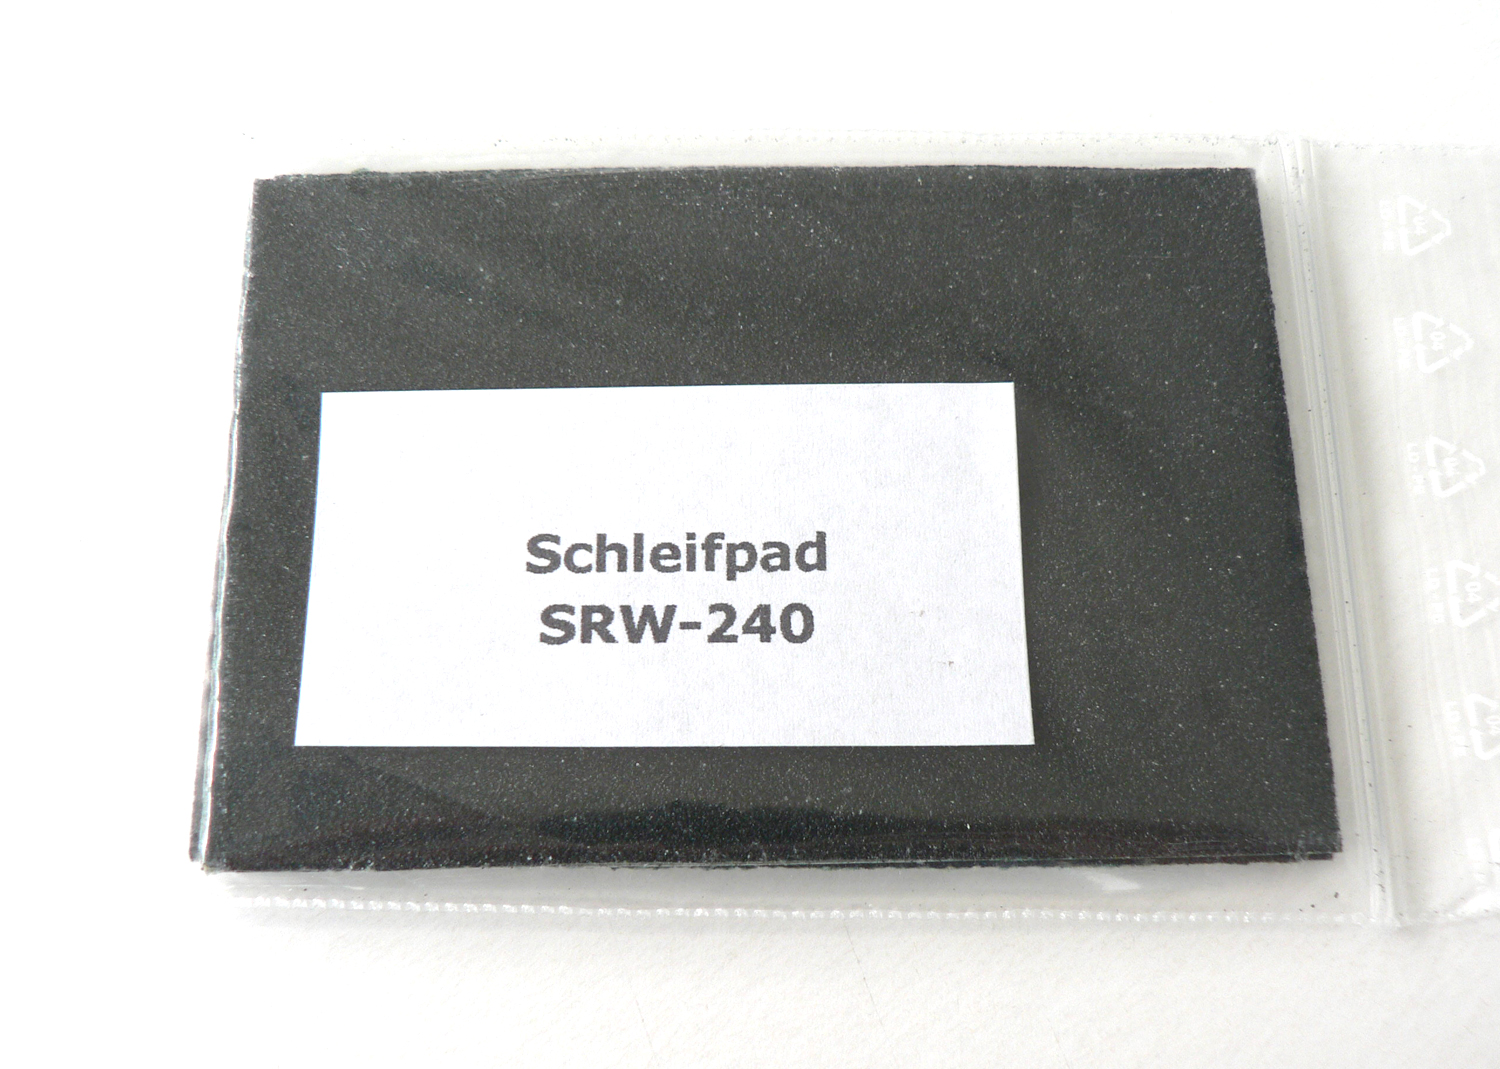 KPF 1102 Schleifpad SRW-240, Glätten von Schienen-Stössen